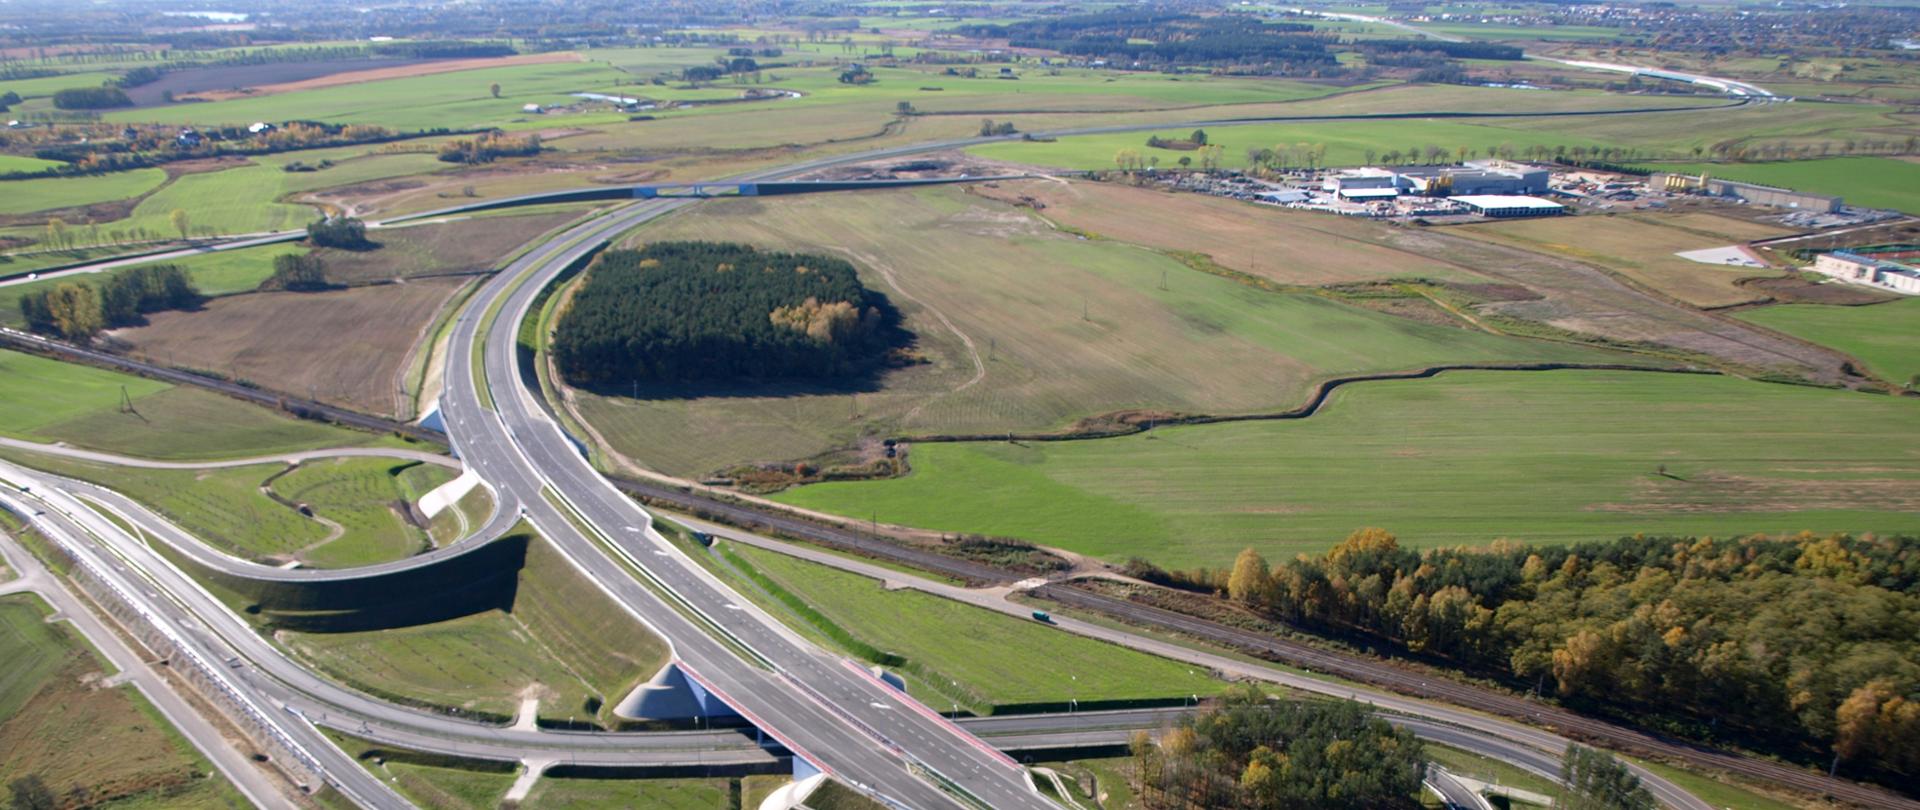 
Zdjęcie przedstawiające węzeł drogowy Poznań Północ na drodze ekspresowej S11. Węzeł widoczny z powietrza przebiegający między łąkami, polami i zabudową magazynową. Na jednej z łącznic doprowadzających ruch do węzła widoczne poruszające się pojazdy.